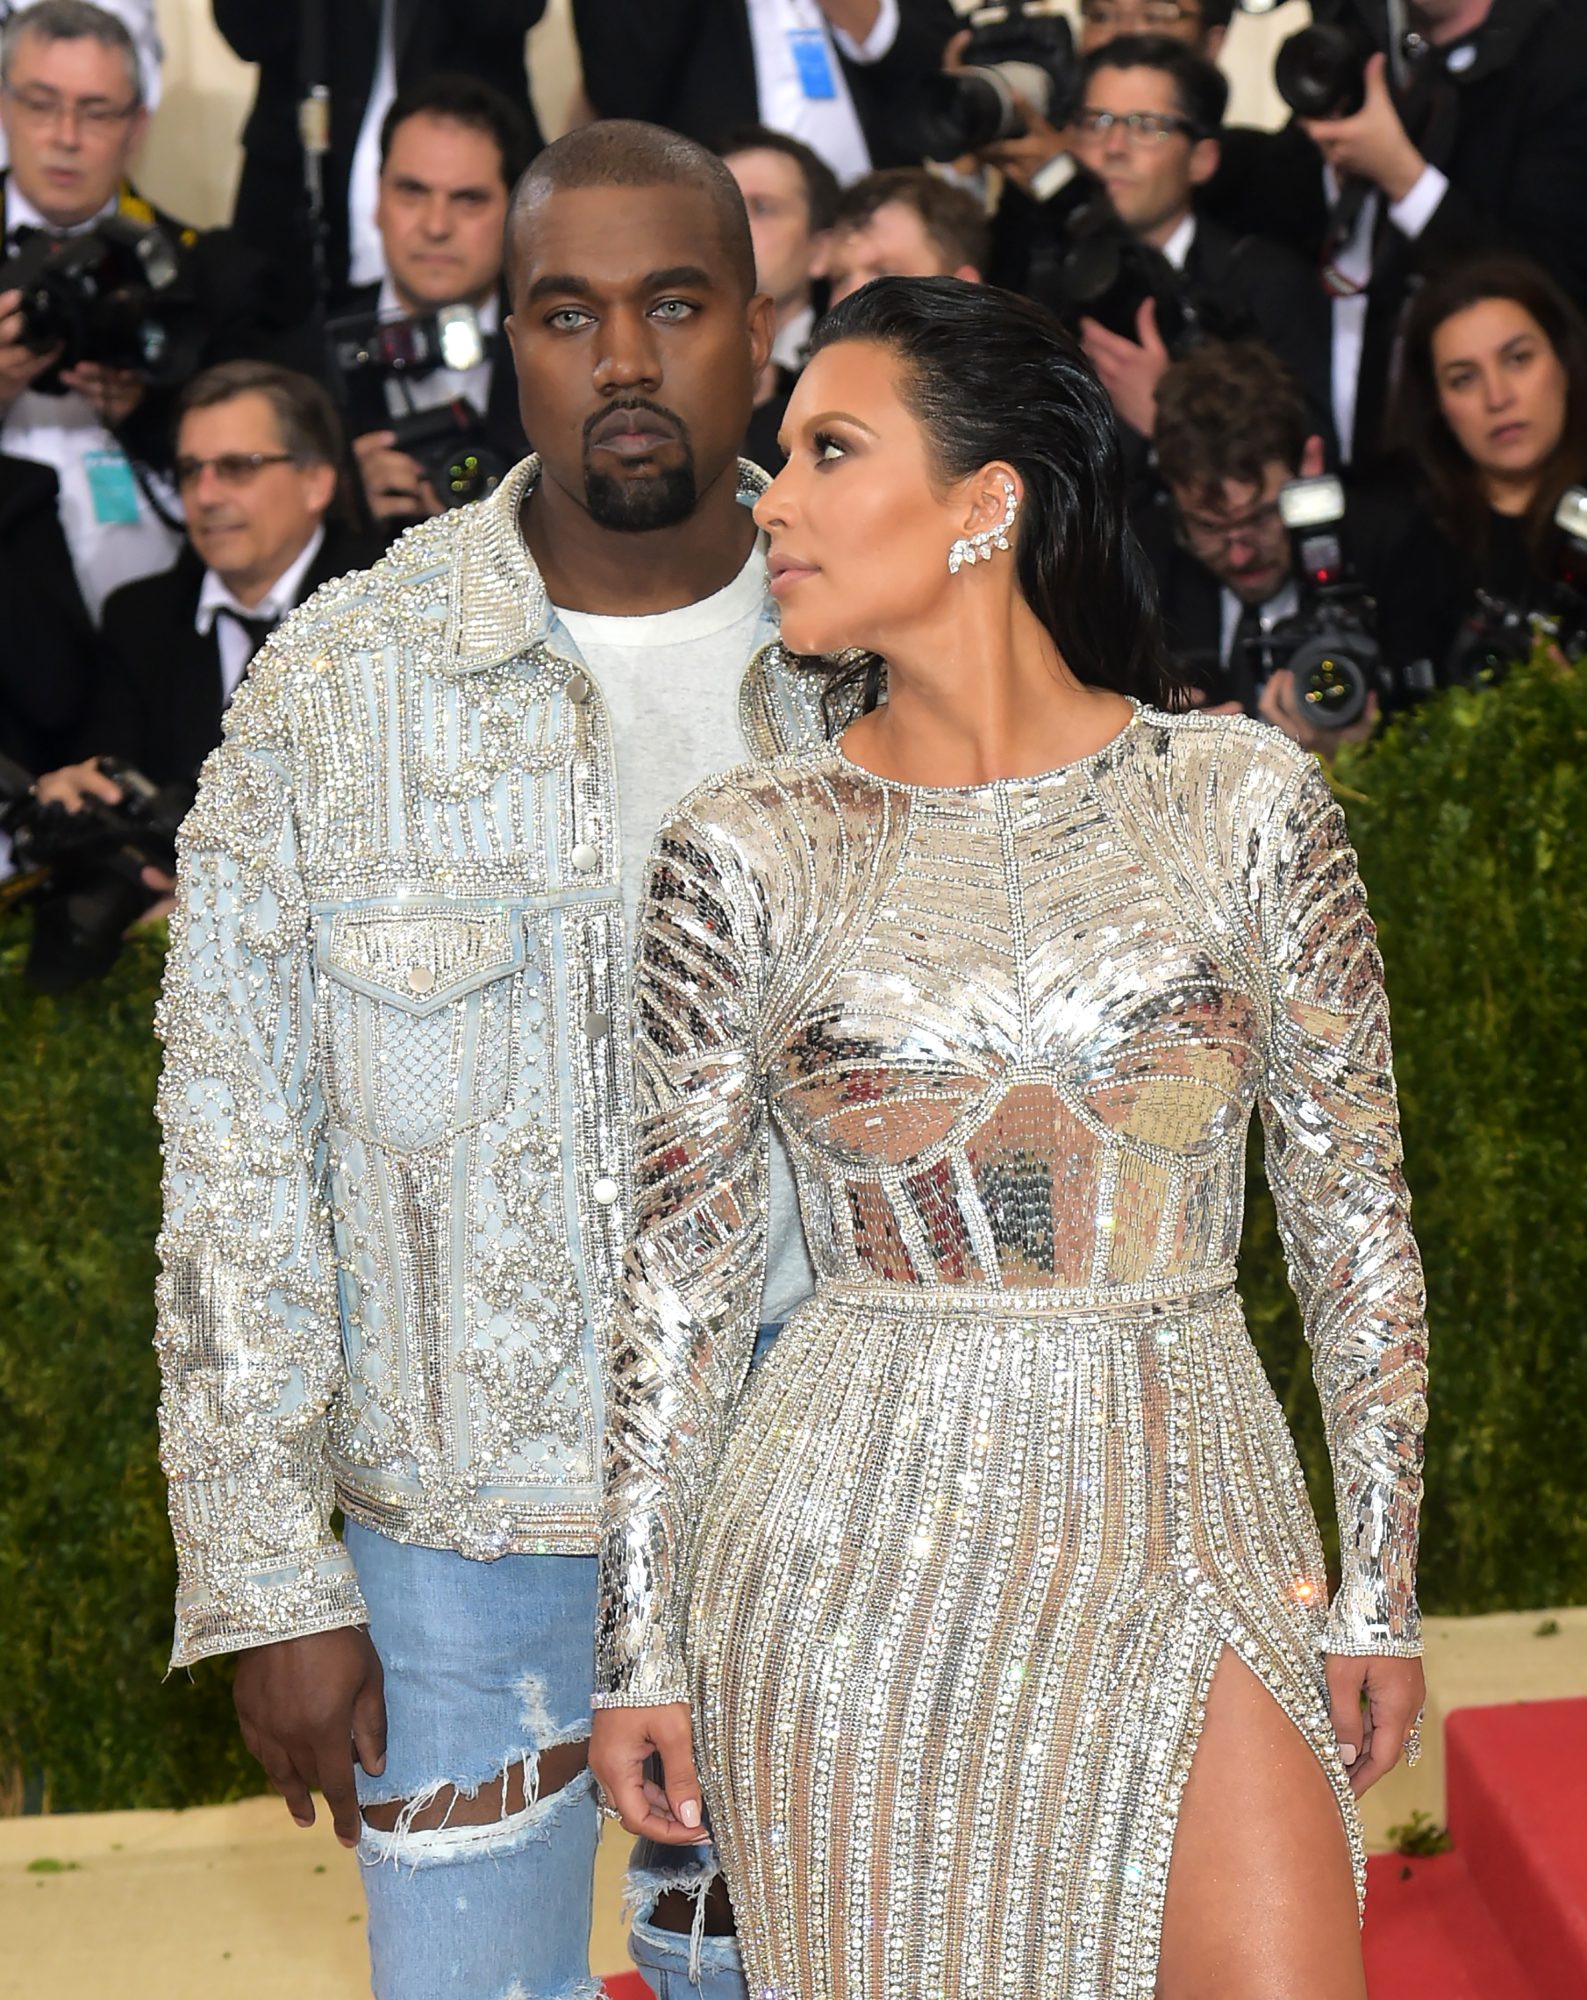 Kanye West's daughter North wore 2016 Met Gala Balmain jacket to Kardashian Christmas Eve party